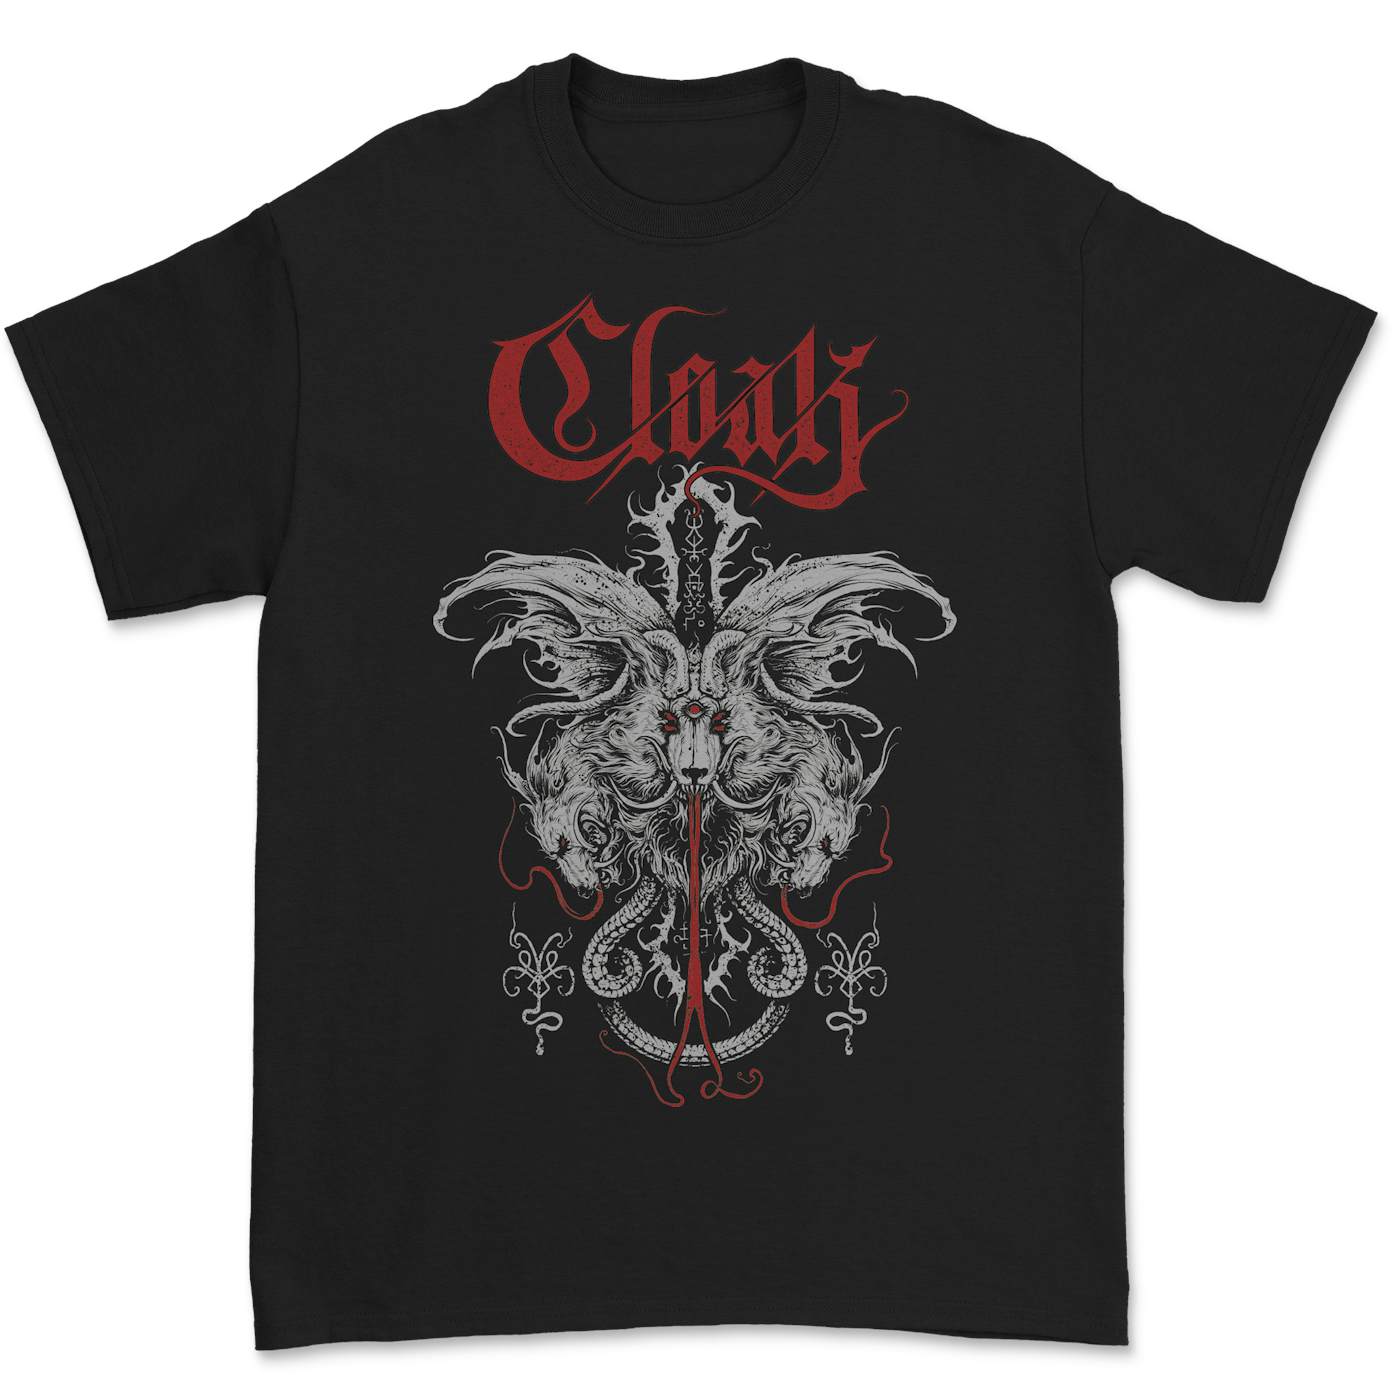 Cloak - Wolves T-Shirt